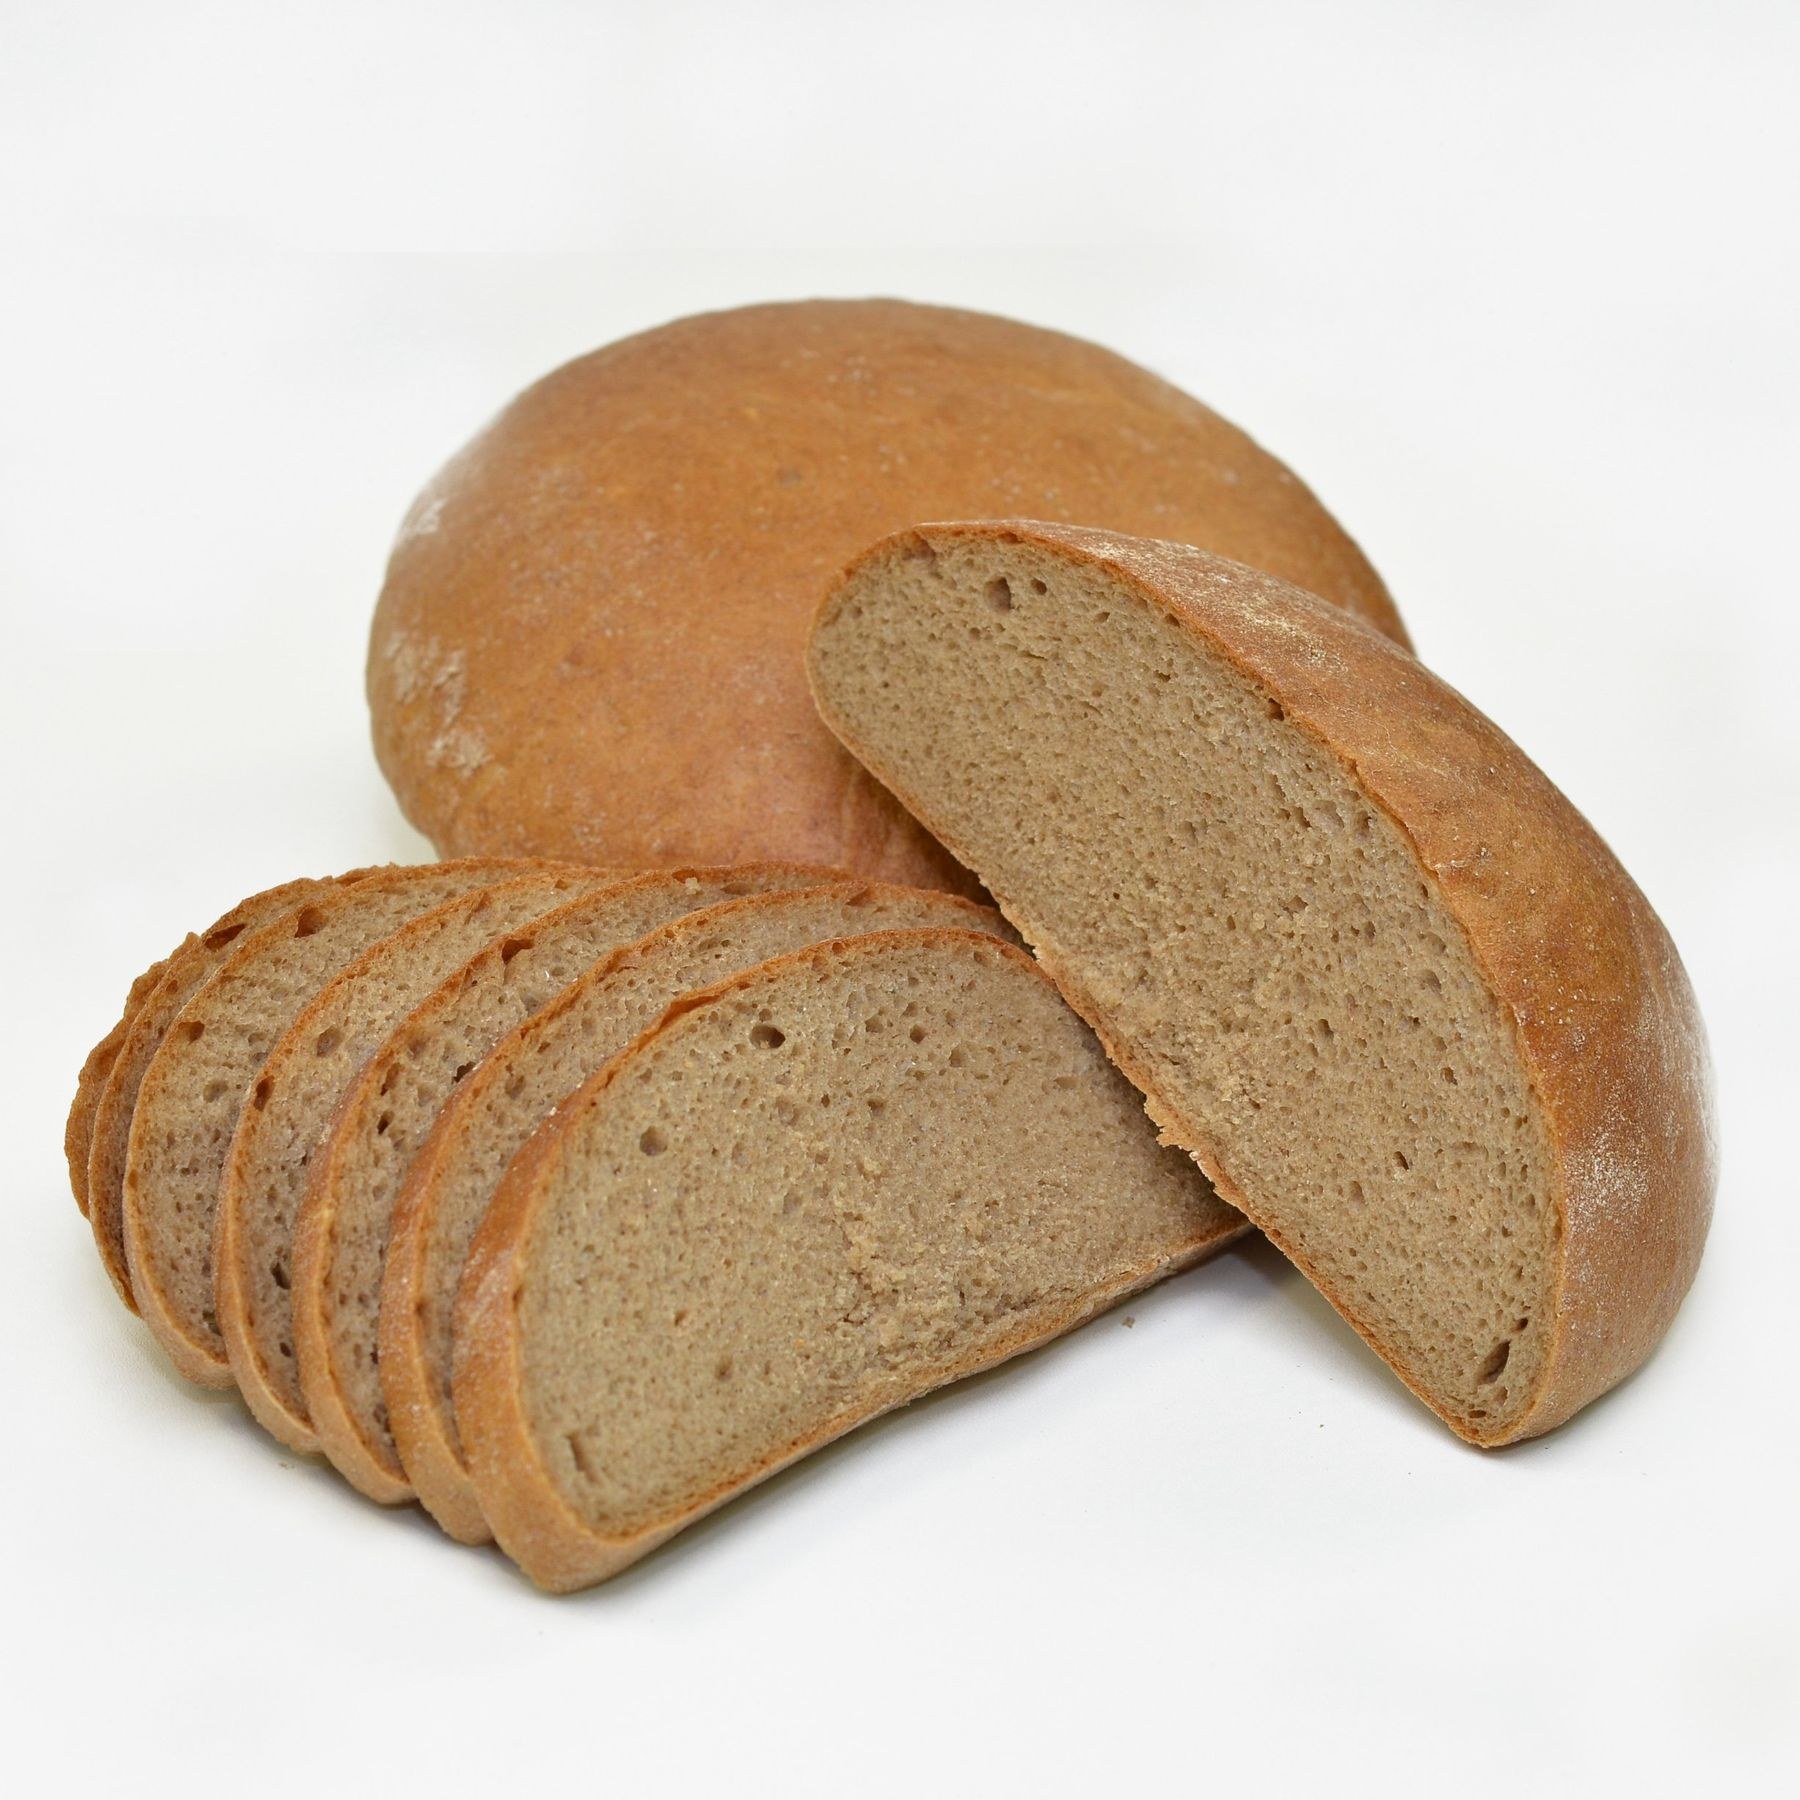 Вес ржаного хлеба. Хлеб ржано-пшеничный подовый. Ржано-пшеничный хлеб ржано-пшеничный хлеб. Круглый хлеб. Ржаные хлебобулочные изделия.